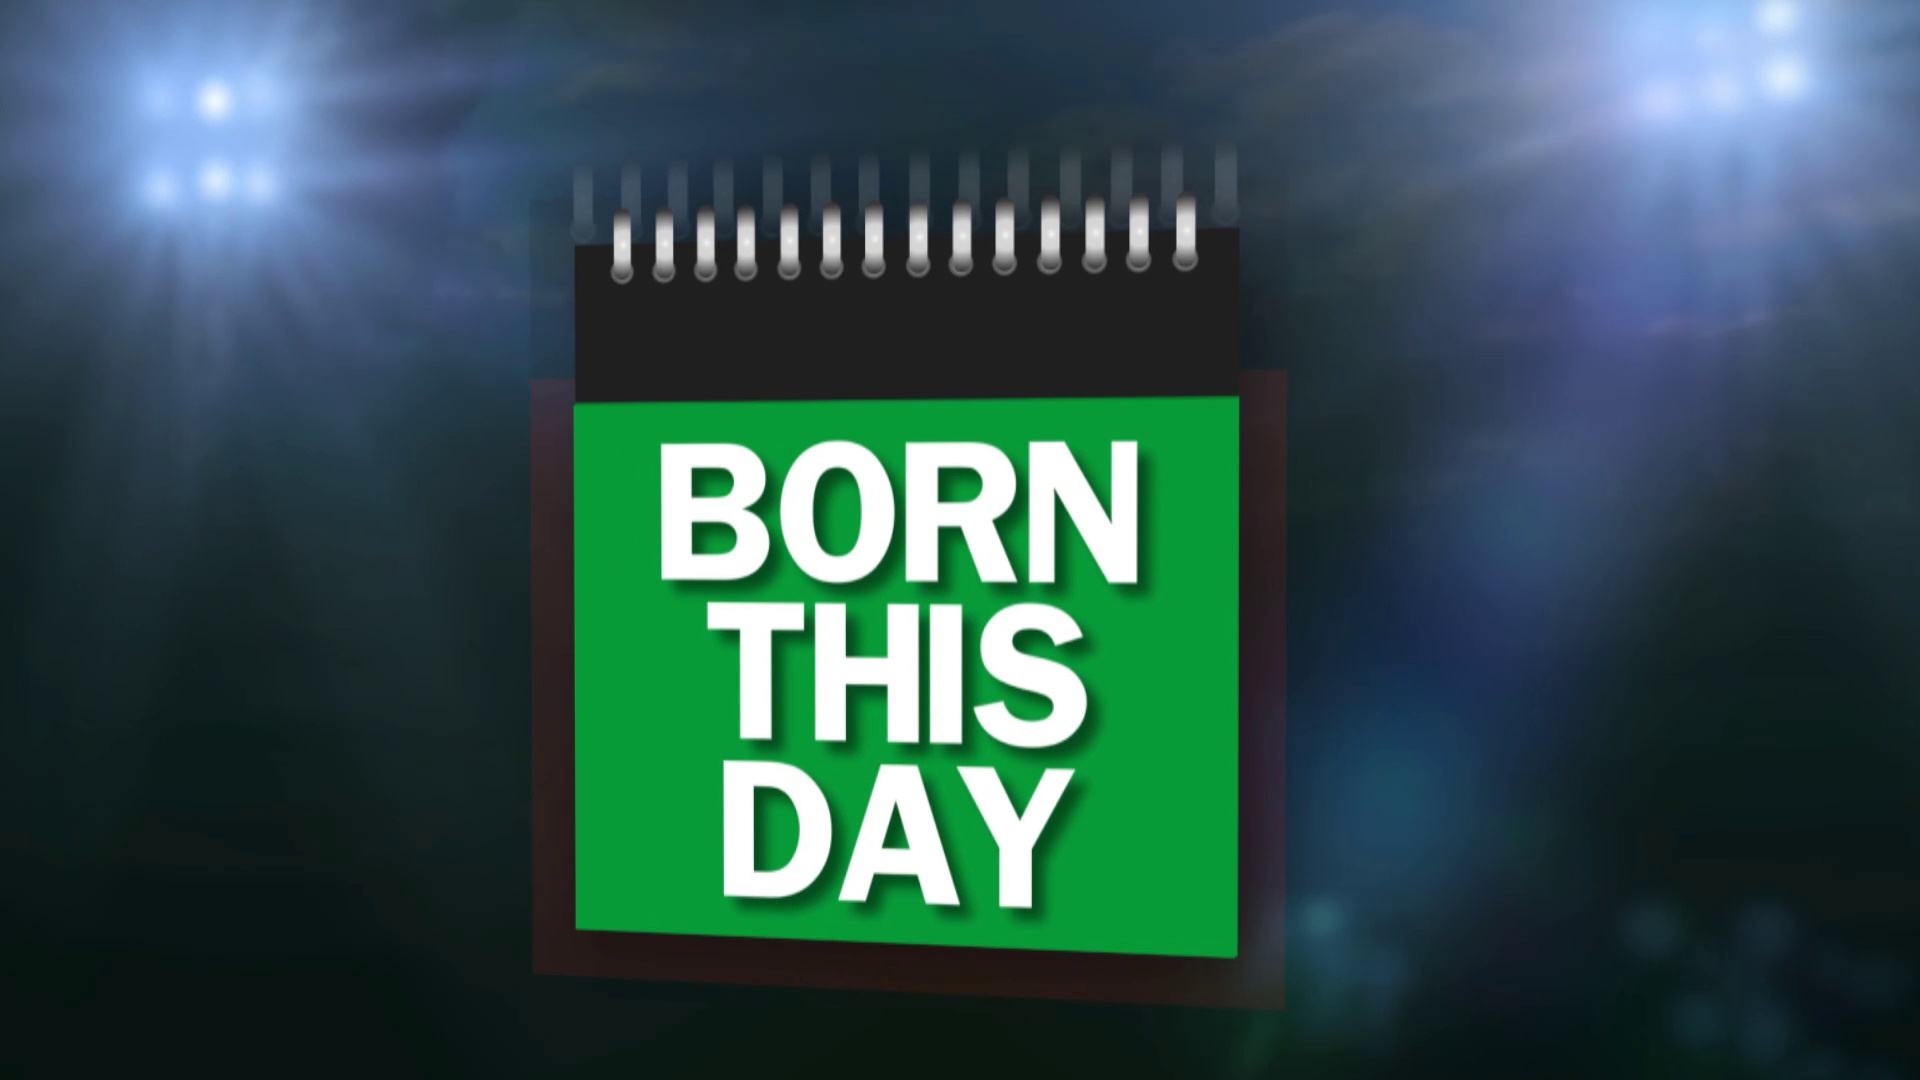 Born This Day - Lewis Hamilton turns 33